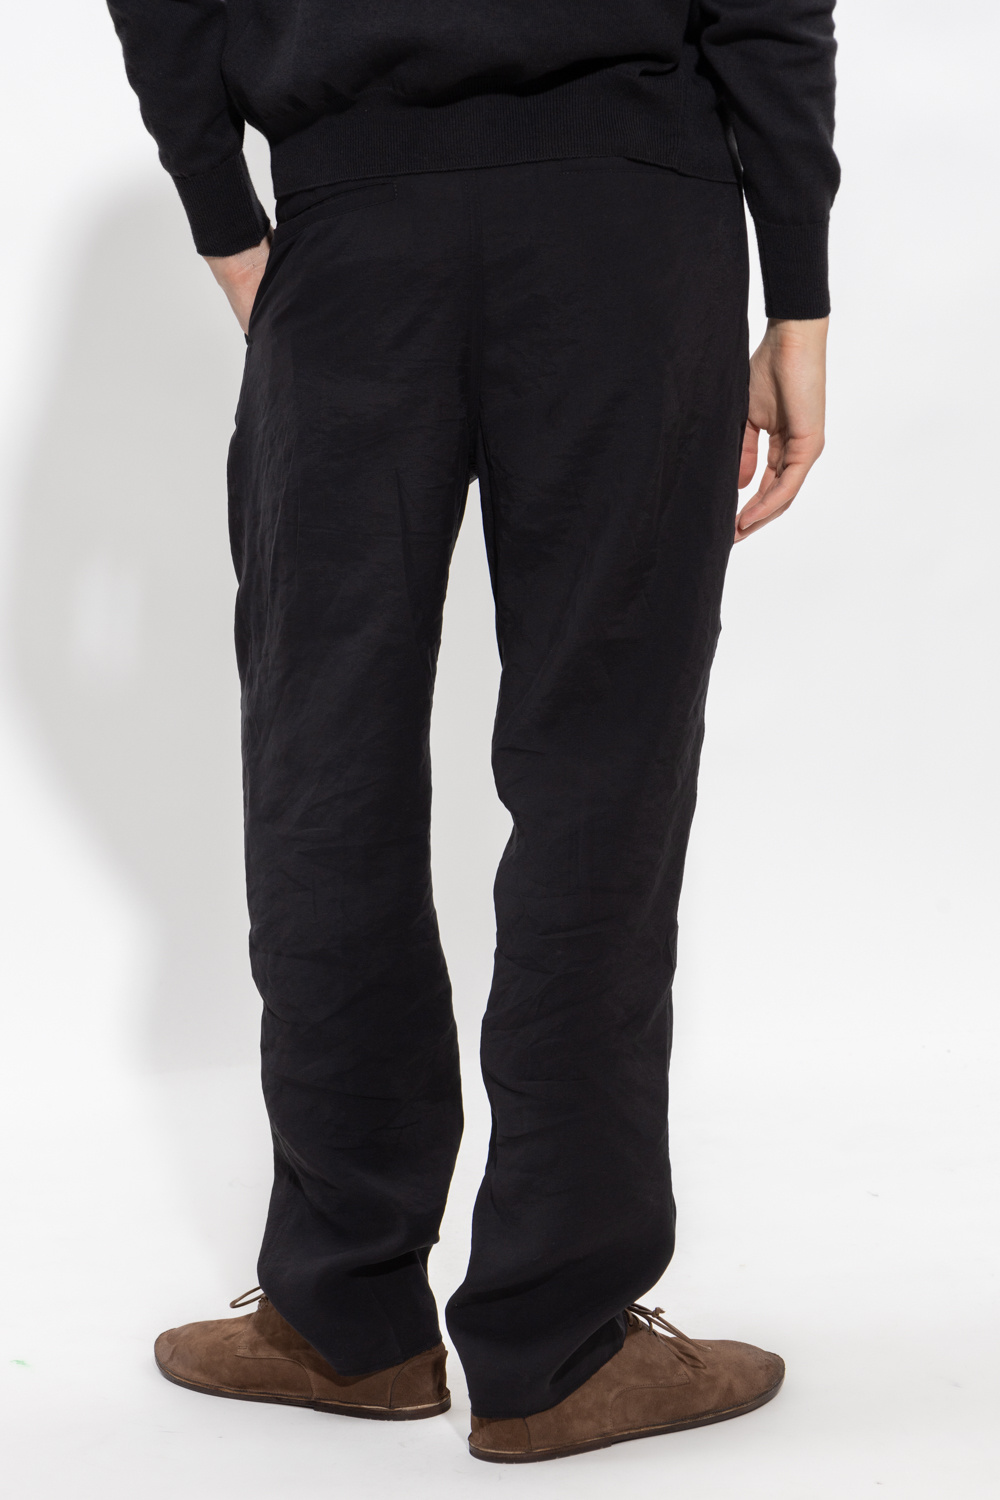 Nanushka ‘Mats’ pleat-front trousers